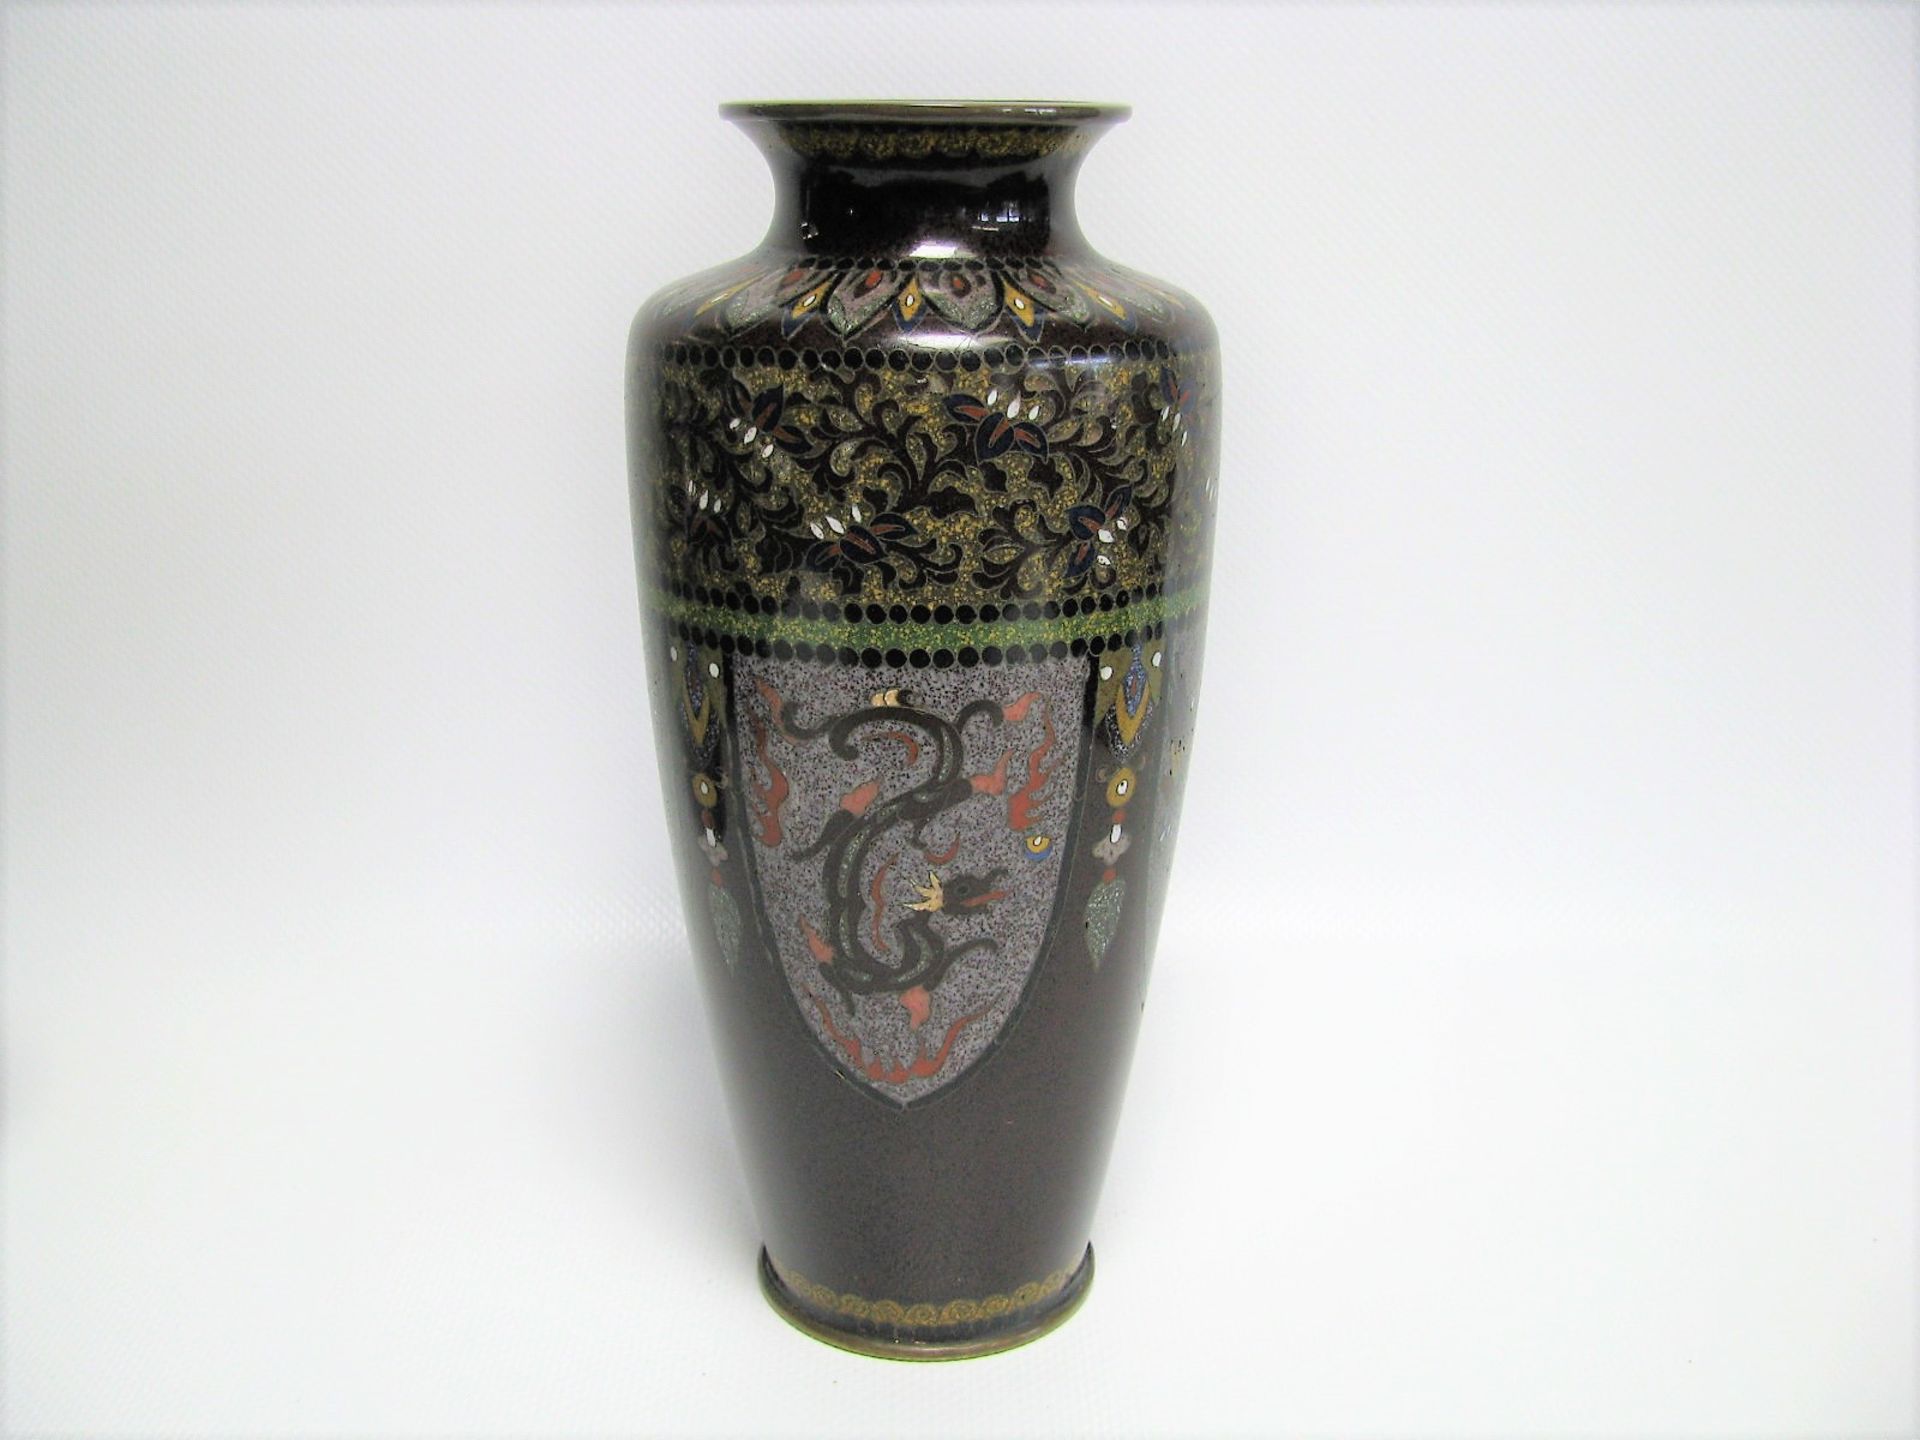 Cloisonné Vase, Japan, Meiji Periode, 1868 - 1912, farbiges Cloisonné, unbeschädigt, h 18 cm, d 8,